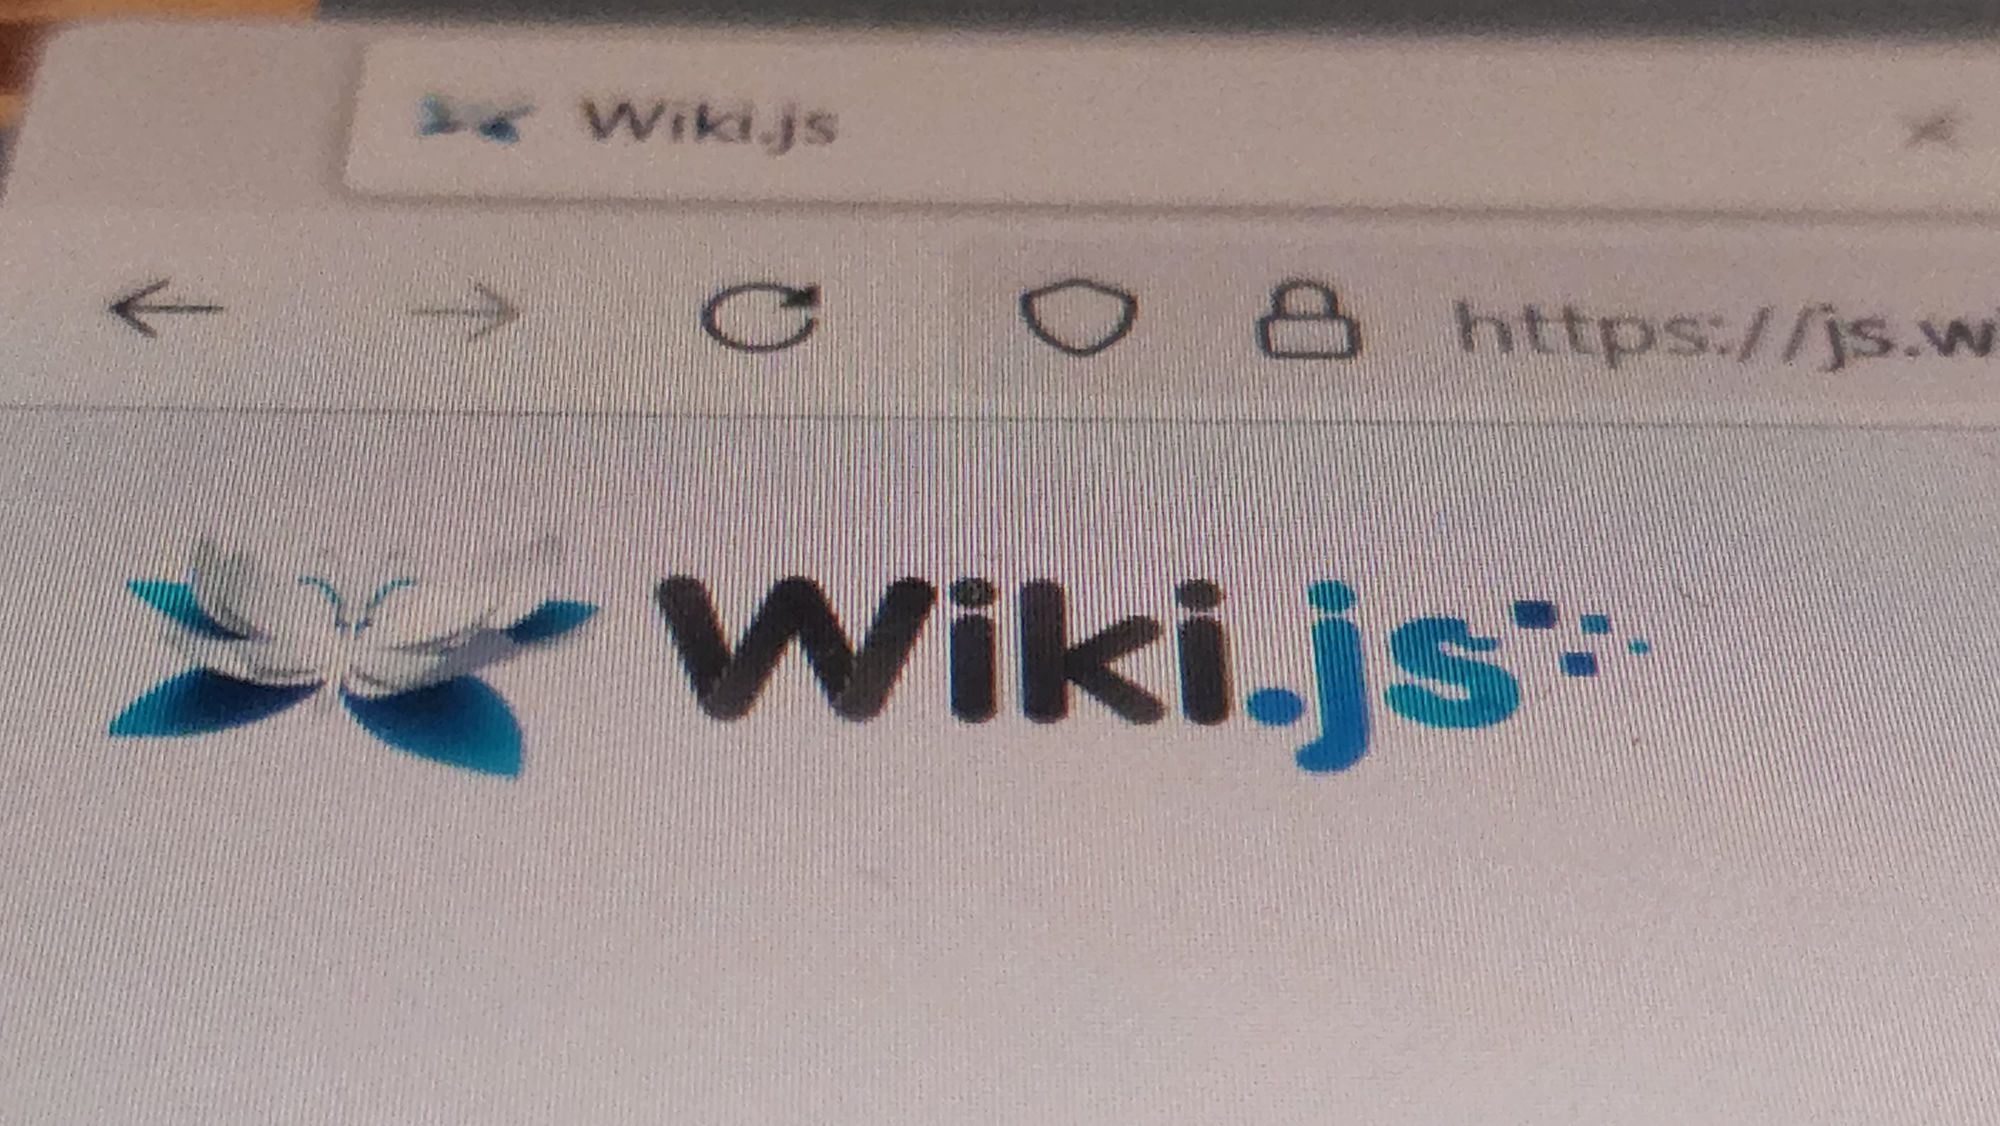 Wiki JS Runtime Host on Windows